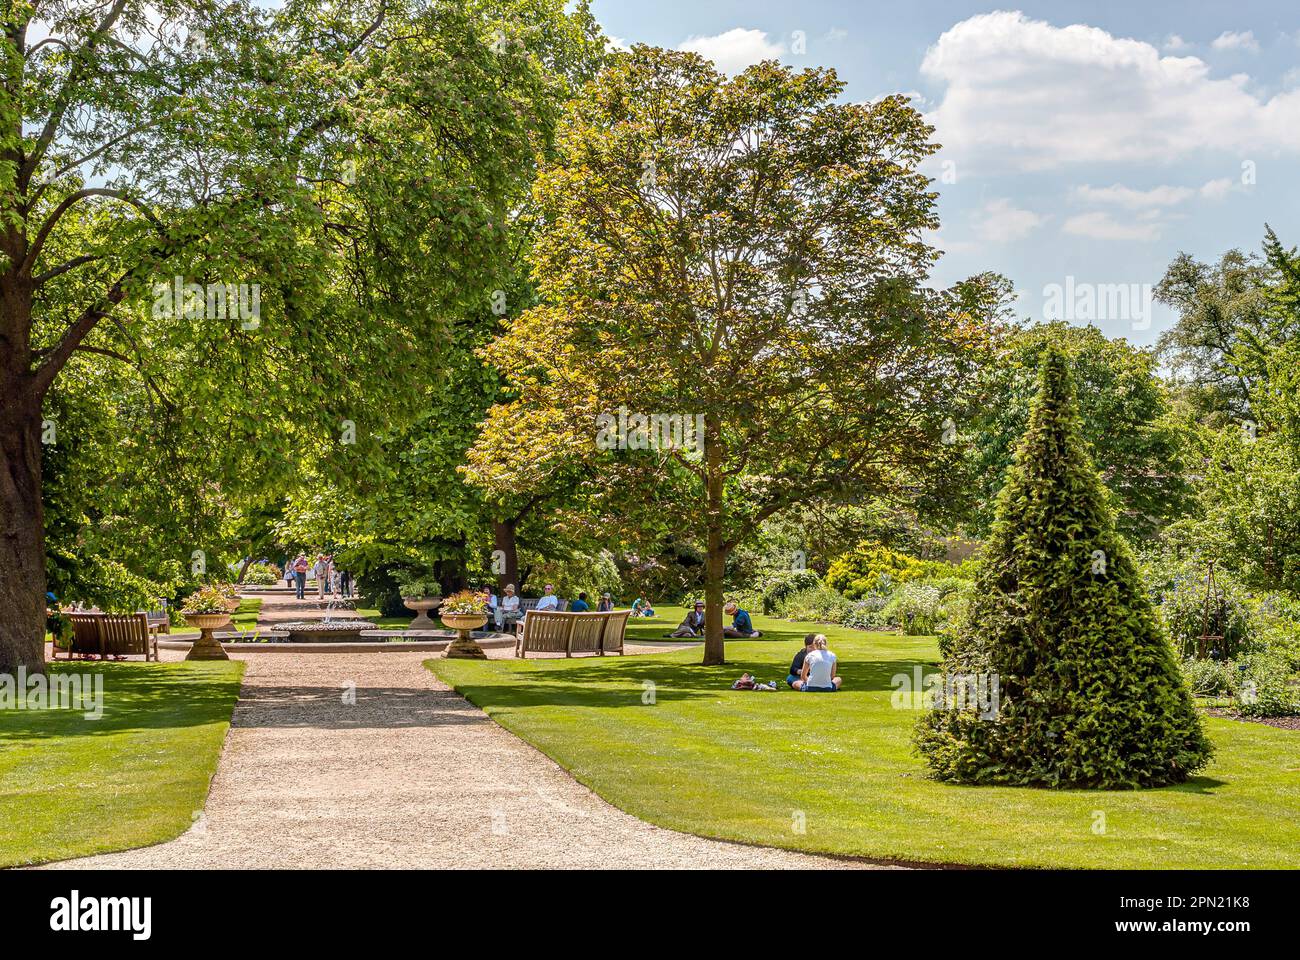 University Botanical Gardens at the City of Oxford, England, UK Stock Photo